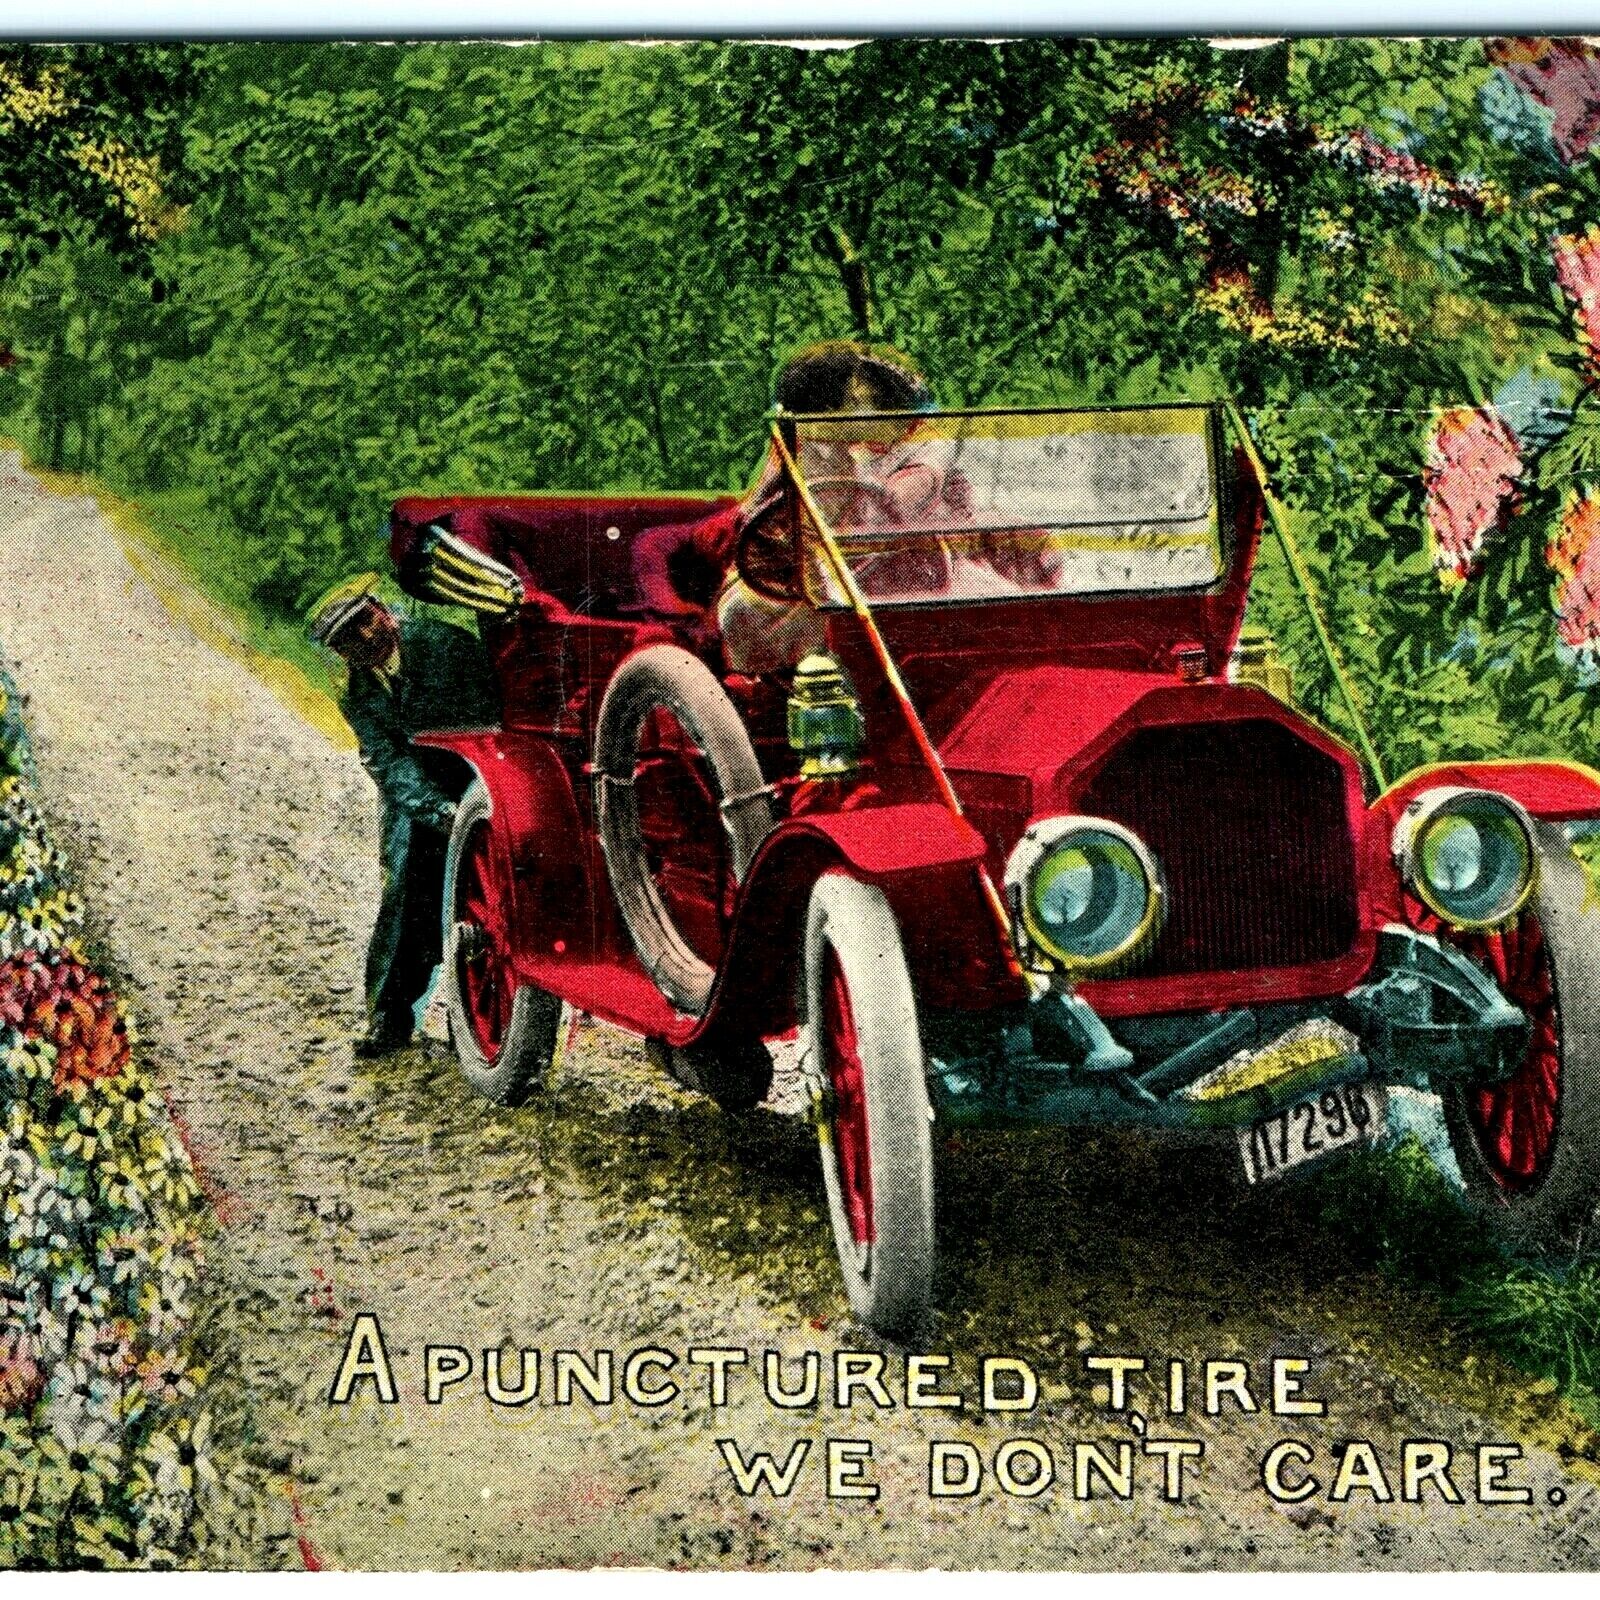 c1910s Romantic Punctured Tire, Don't Care Postcard Automobile Car Photo A26